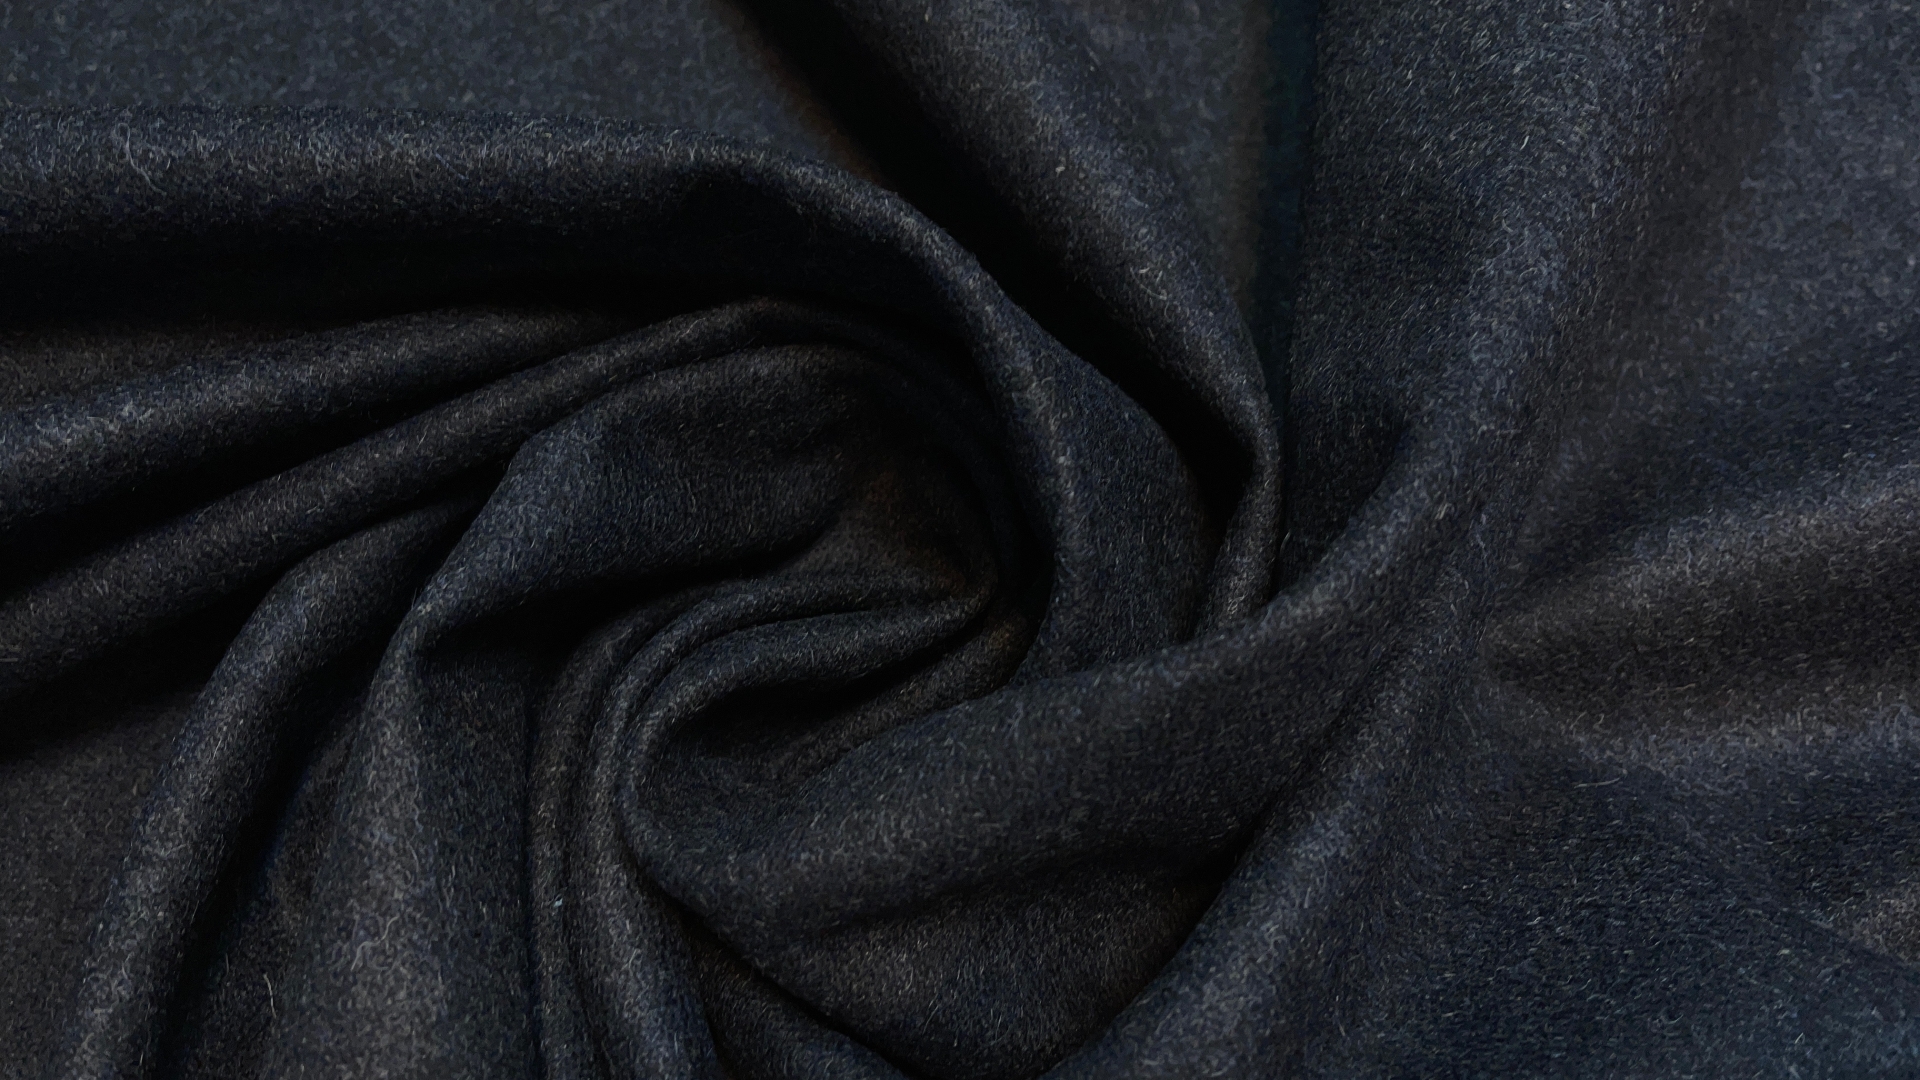 Пальтовая ткань спокойного синего цвета с каплей серого. Полотно плотное, но не толстое. Идеально подойдёт для облегчённого классического пальто или тёплого пиджака.